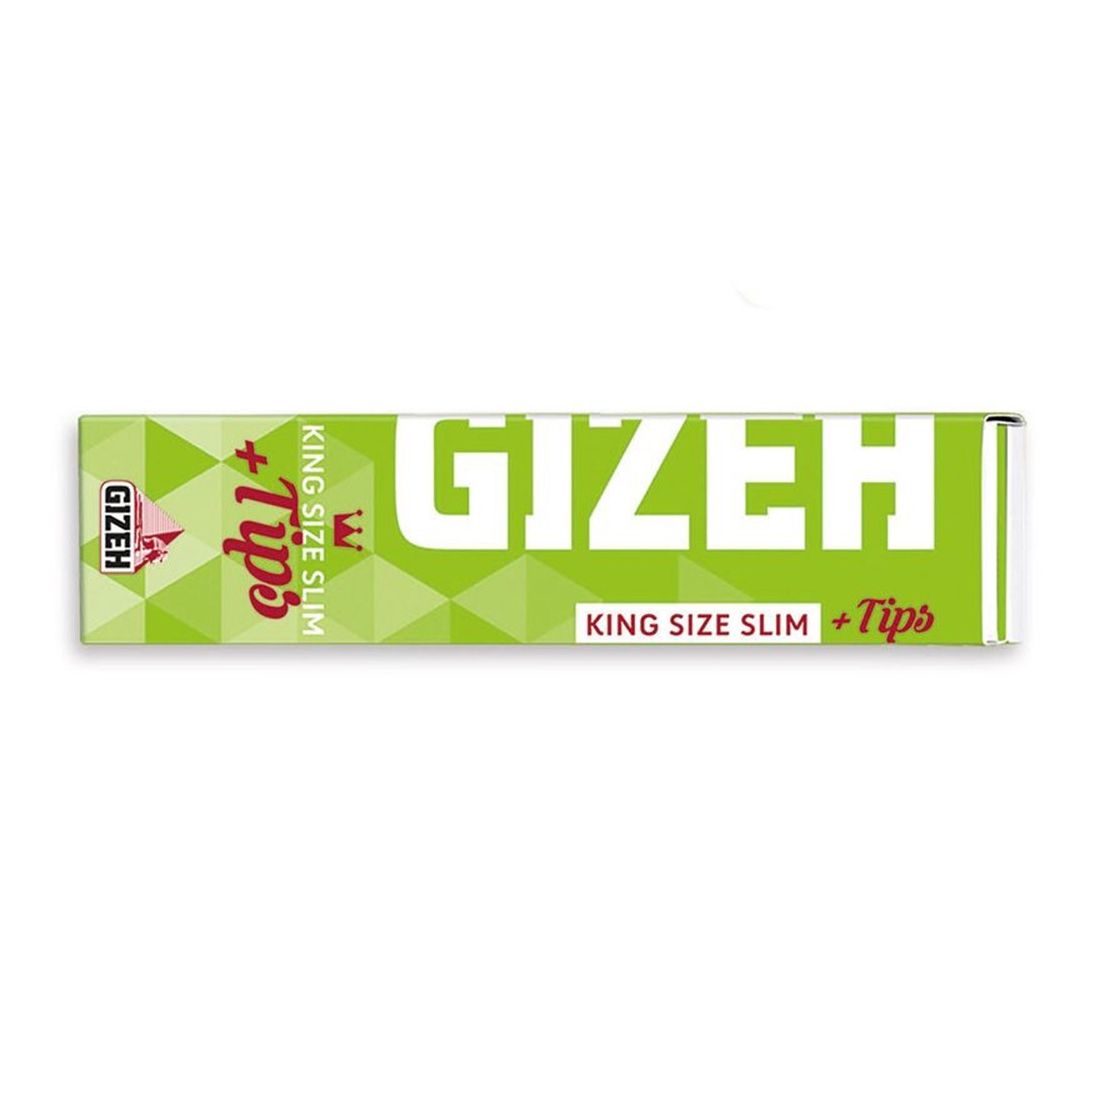 Cartine Gizeh Super Fine KS Slim + Tips - 1 Libretto